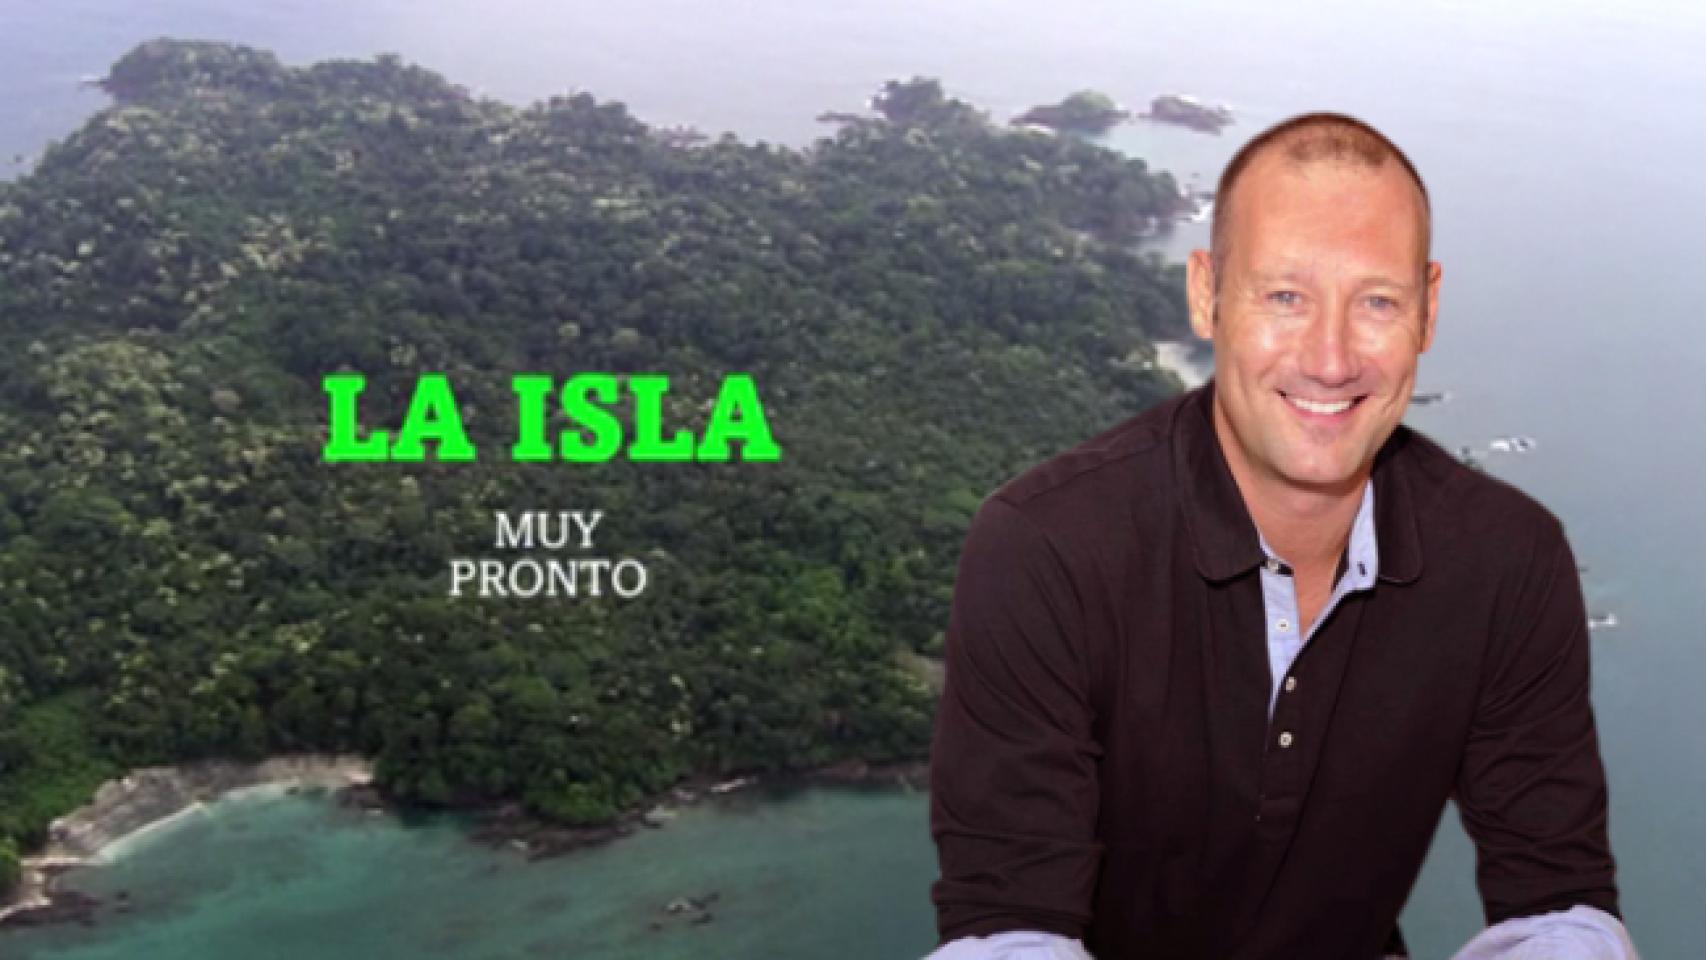 Atresmedia envía 'La isla' a laSexta y estrena su primera promo